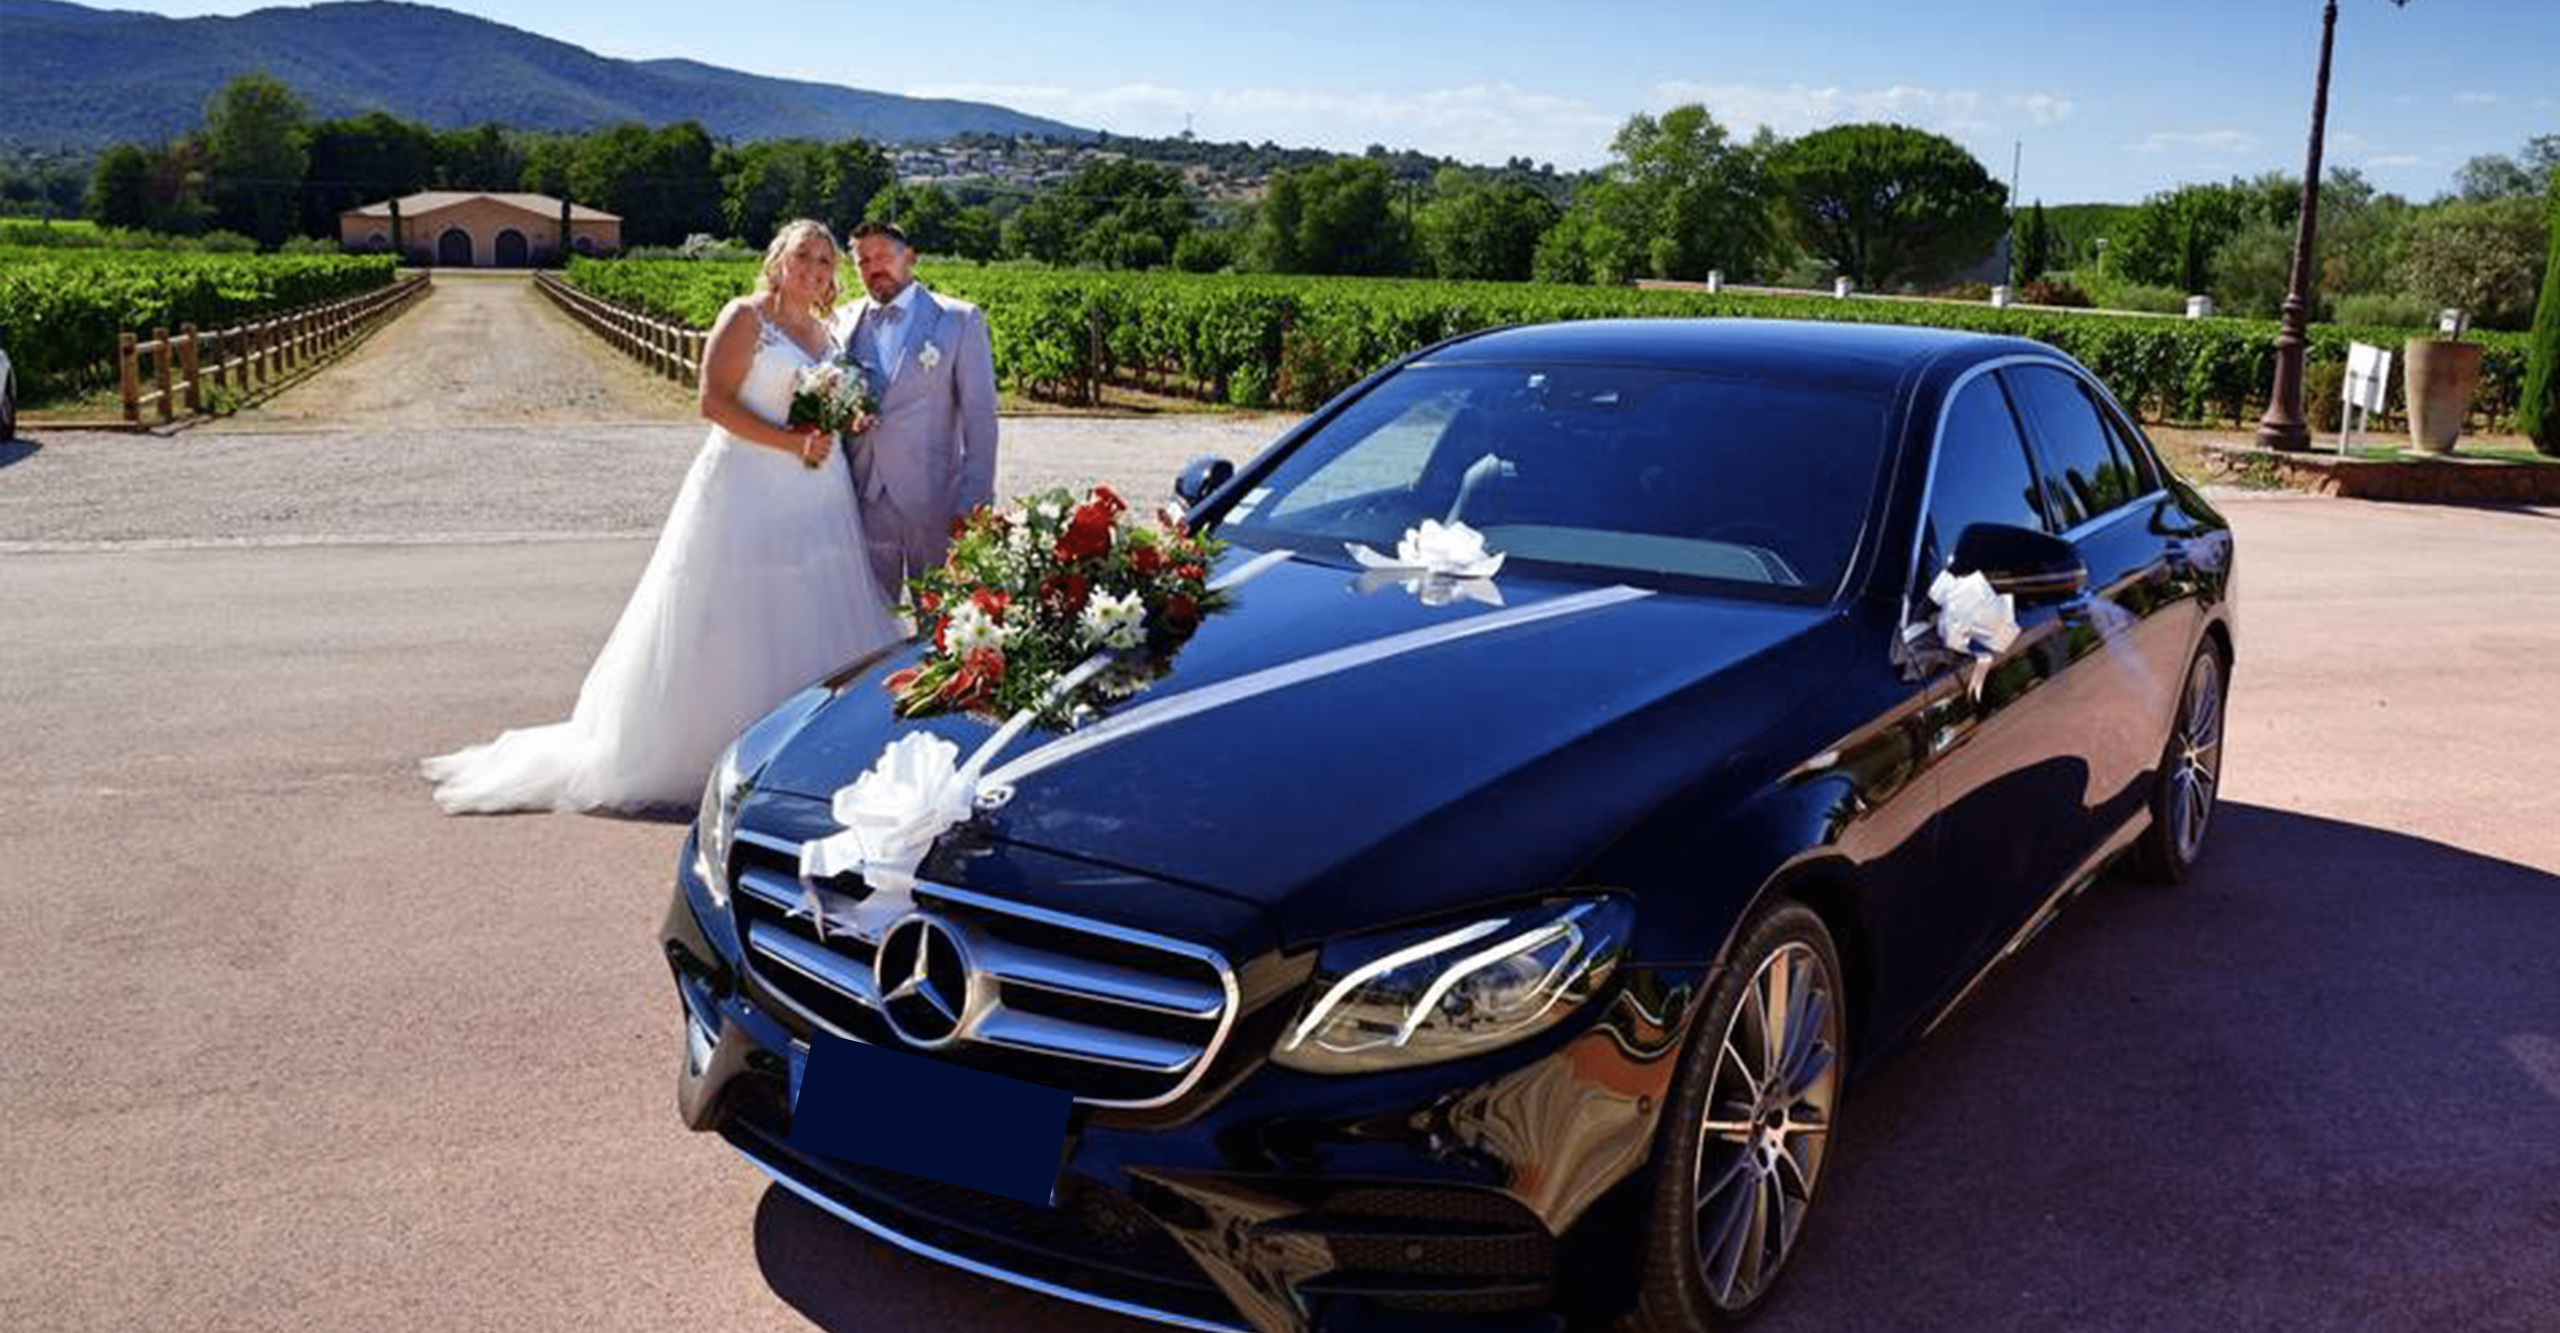 Luxury car rental wedding in marrakech